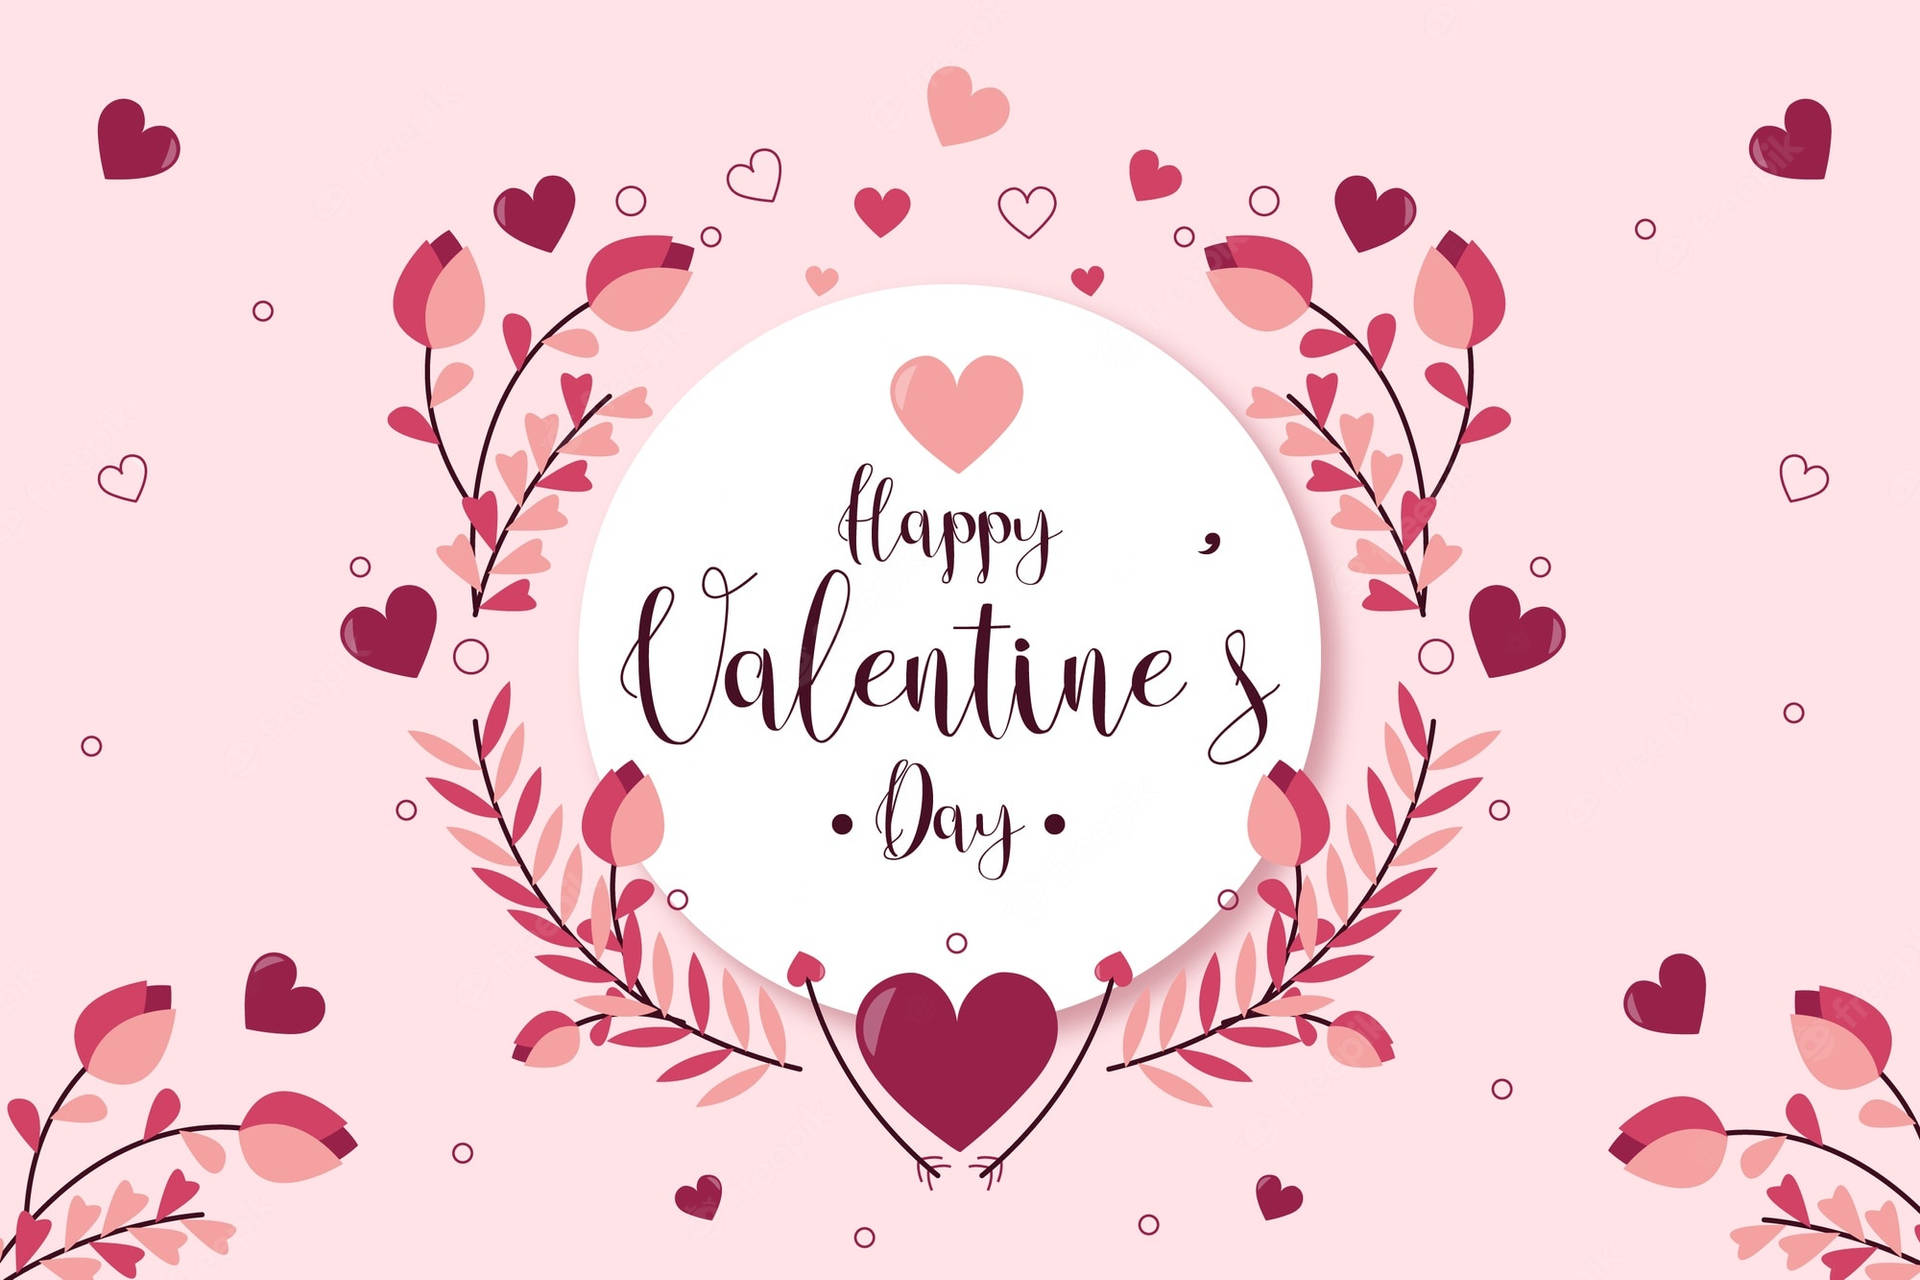 Felizdía De San Valentín Con Corazones Y Hojas. Fondo de pantalla